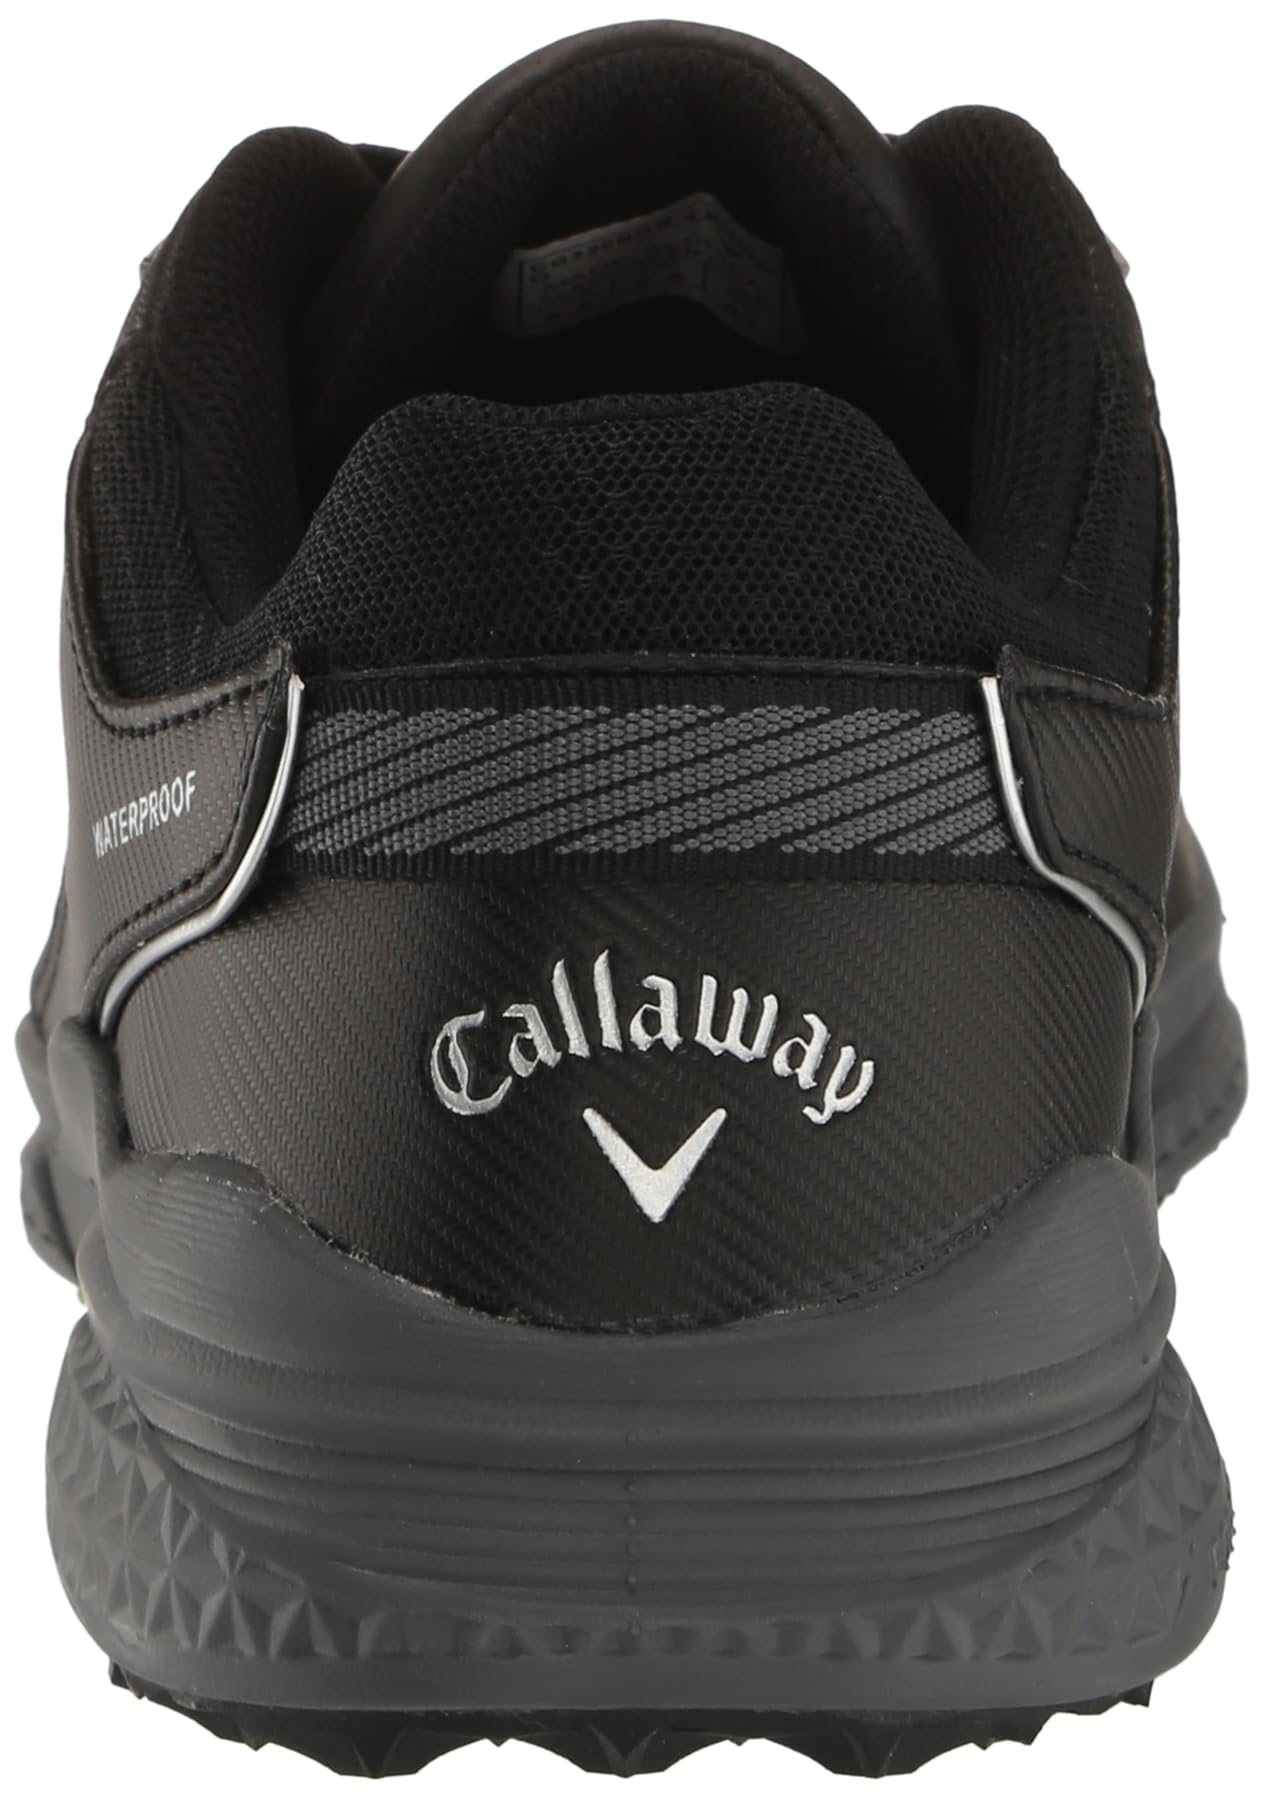 Callaway Men's Solana TRX V3 Golf Shoe